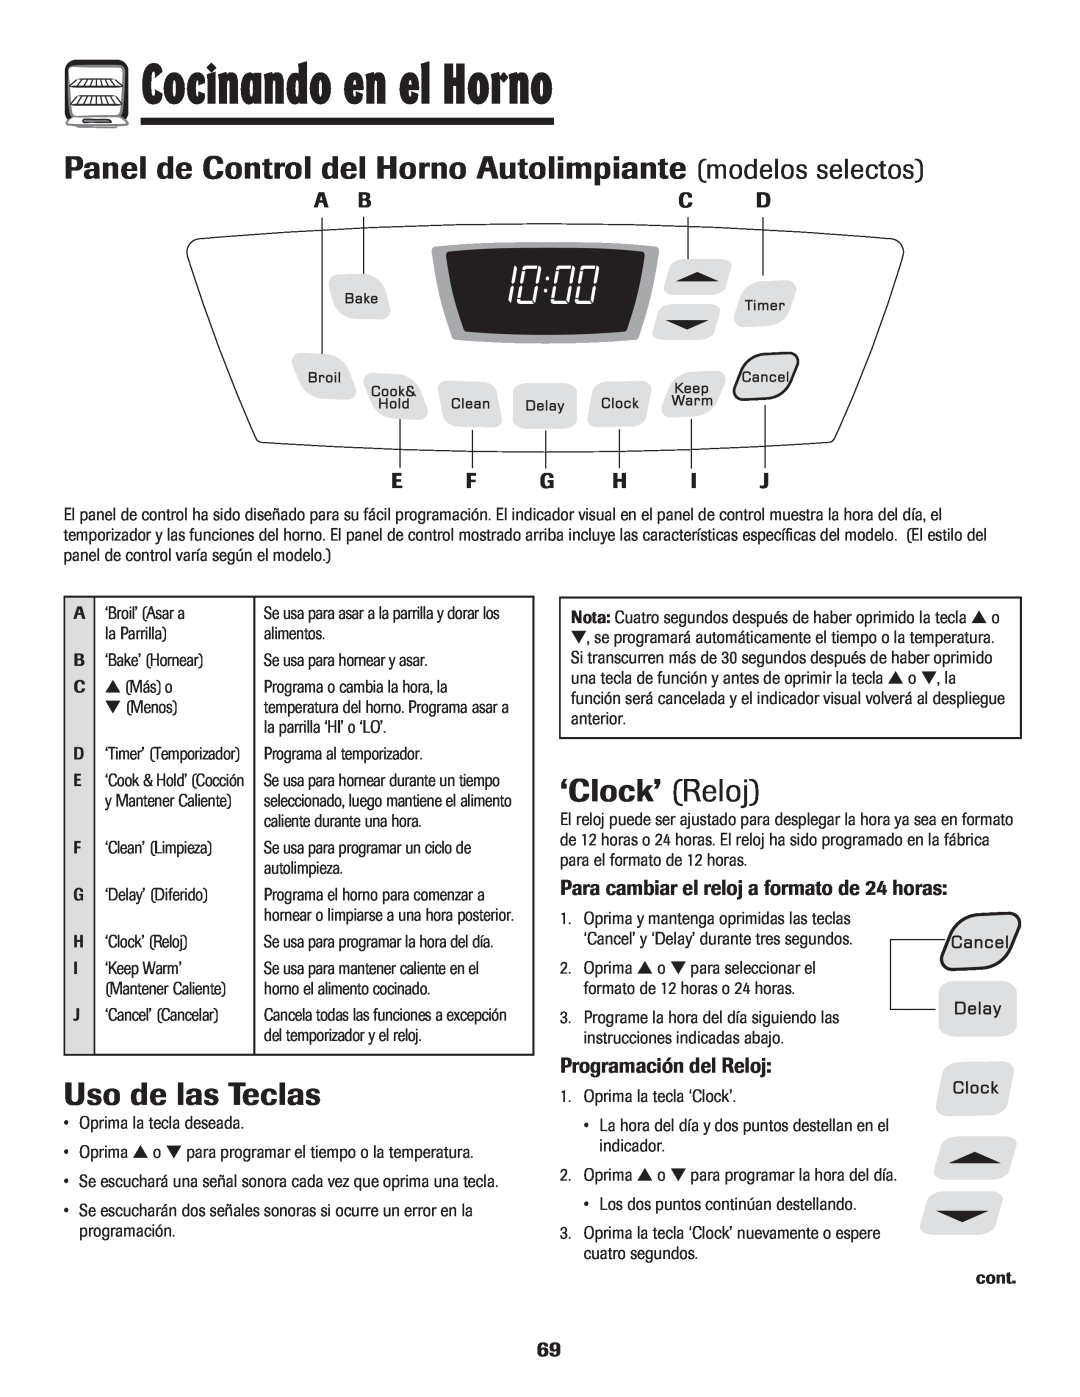 Amana pmn Panel de Control del Horno Autolimpiante modelos selectos, ‘Clock’ Reloj, Programación del Reloj 